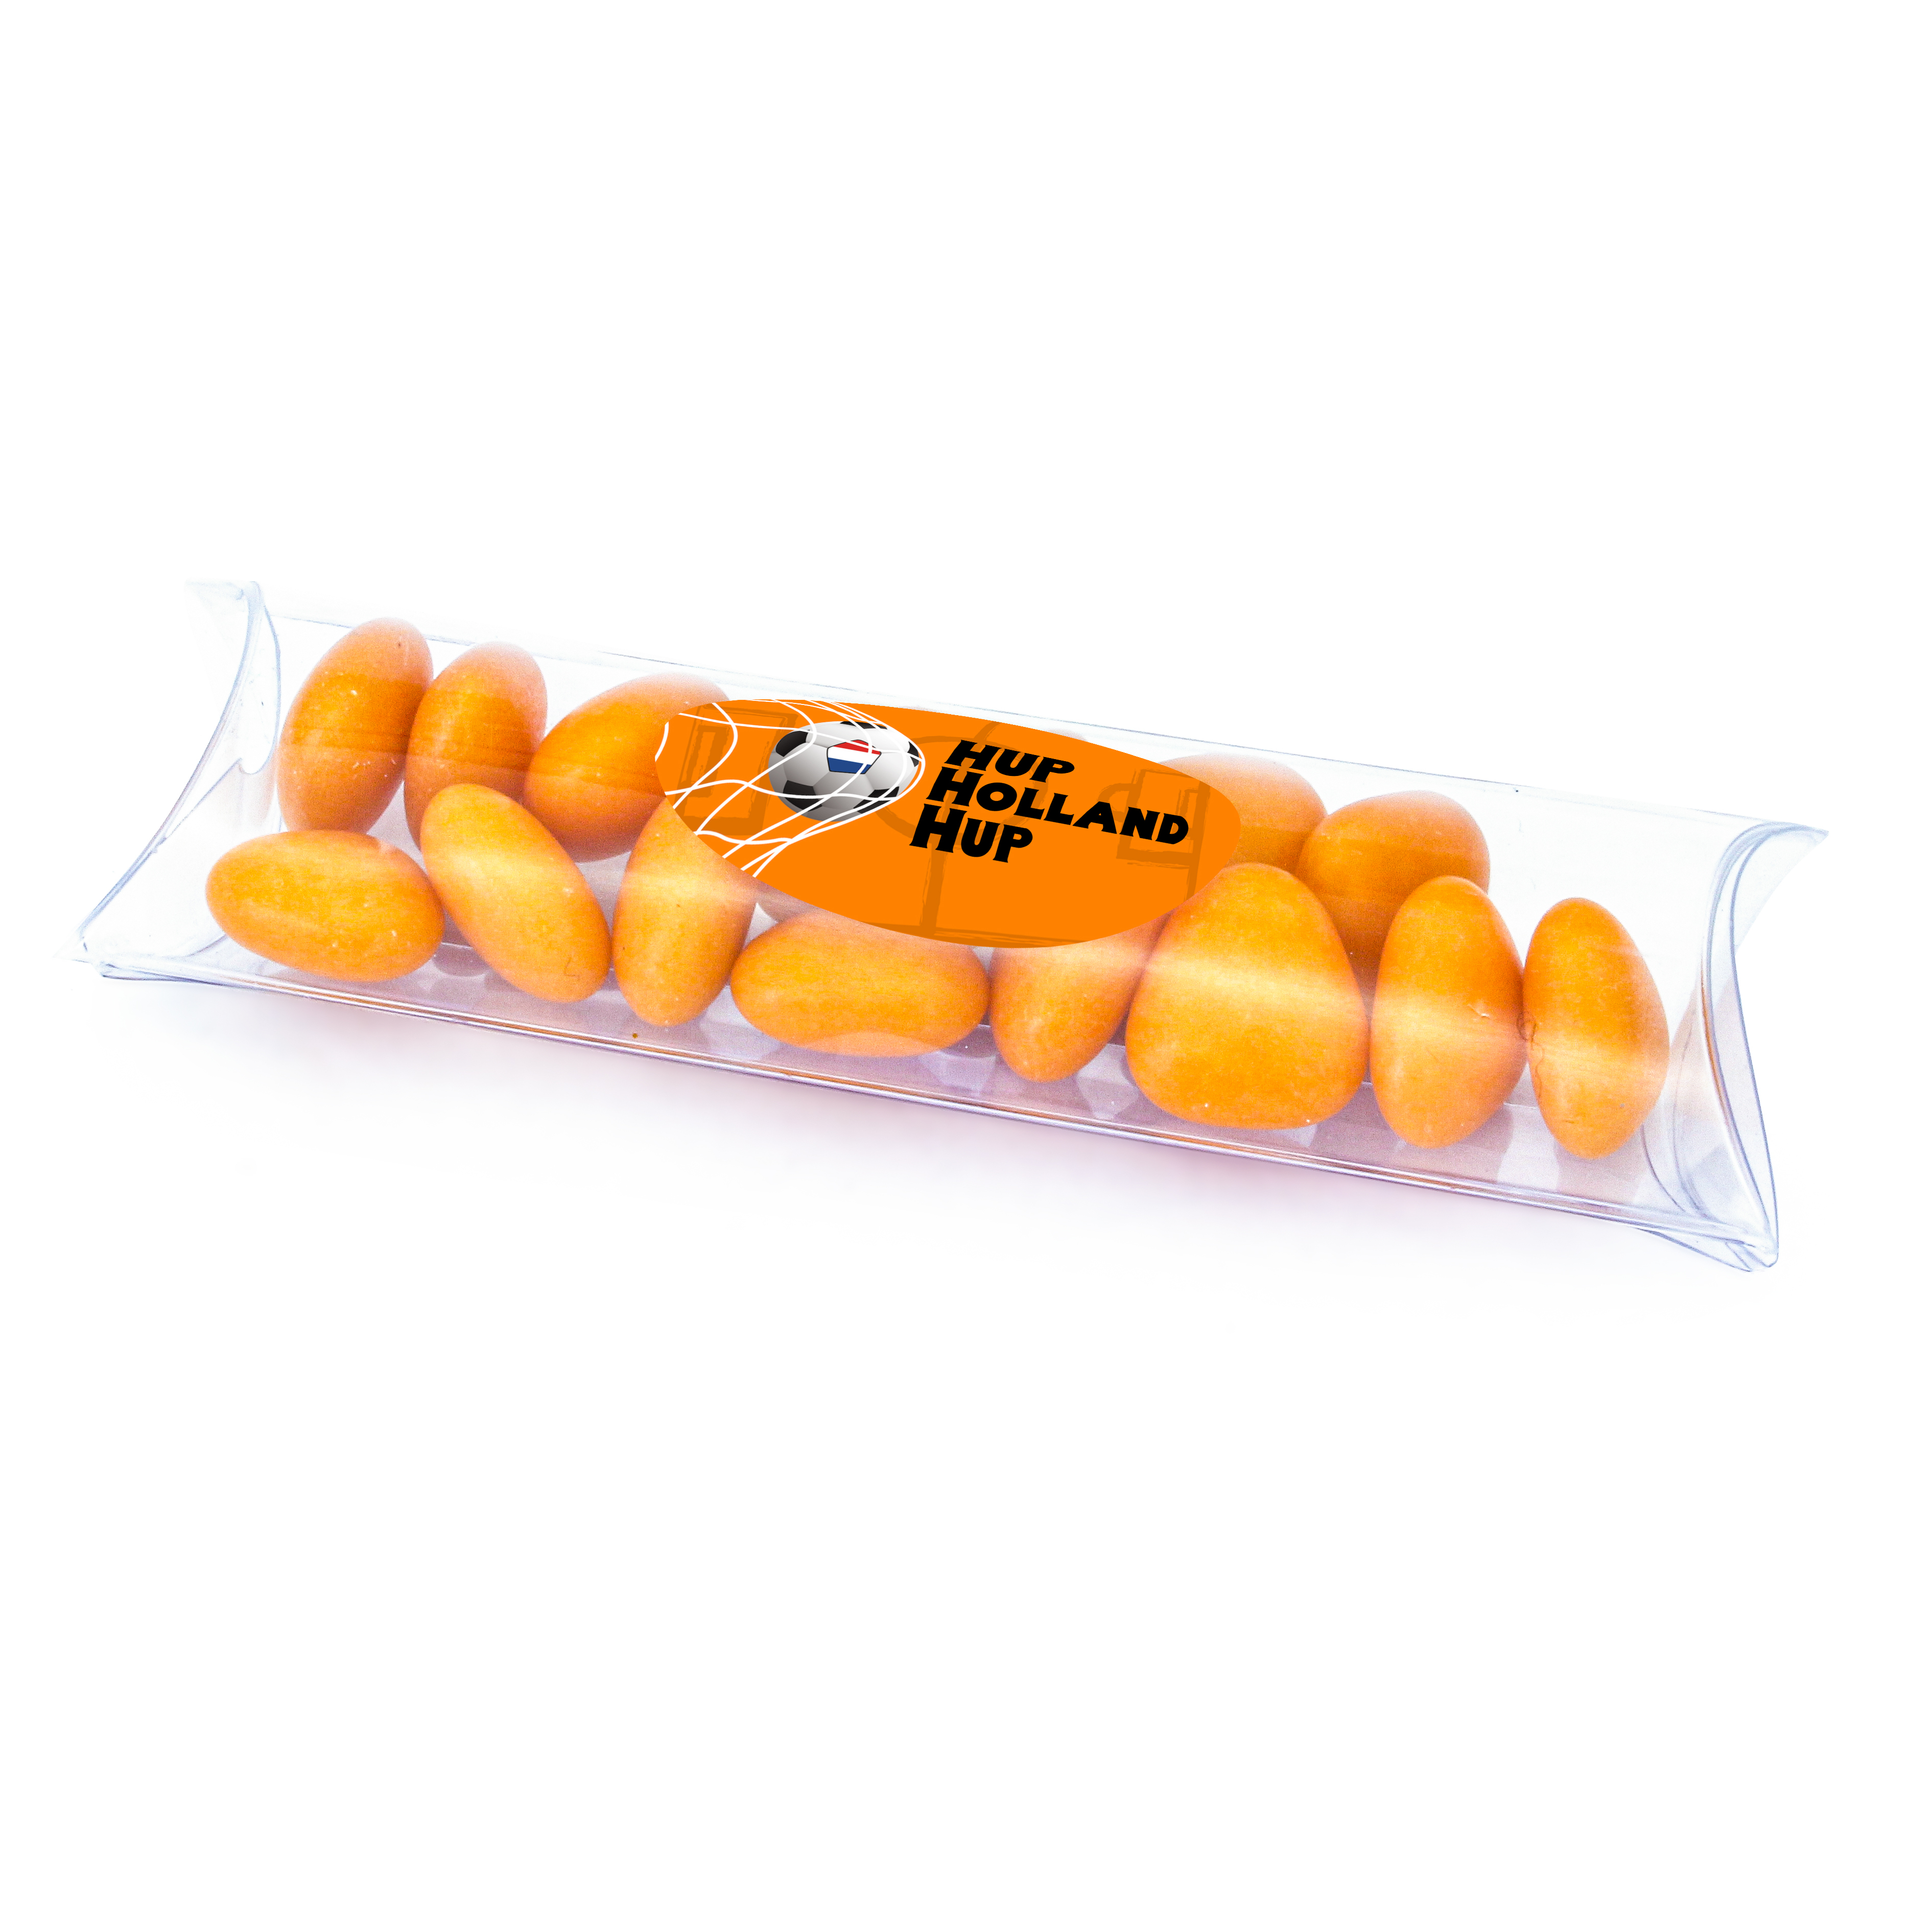 EK bedankje met oranje snoepjes - Hup Holland Hup